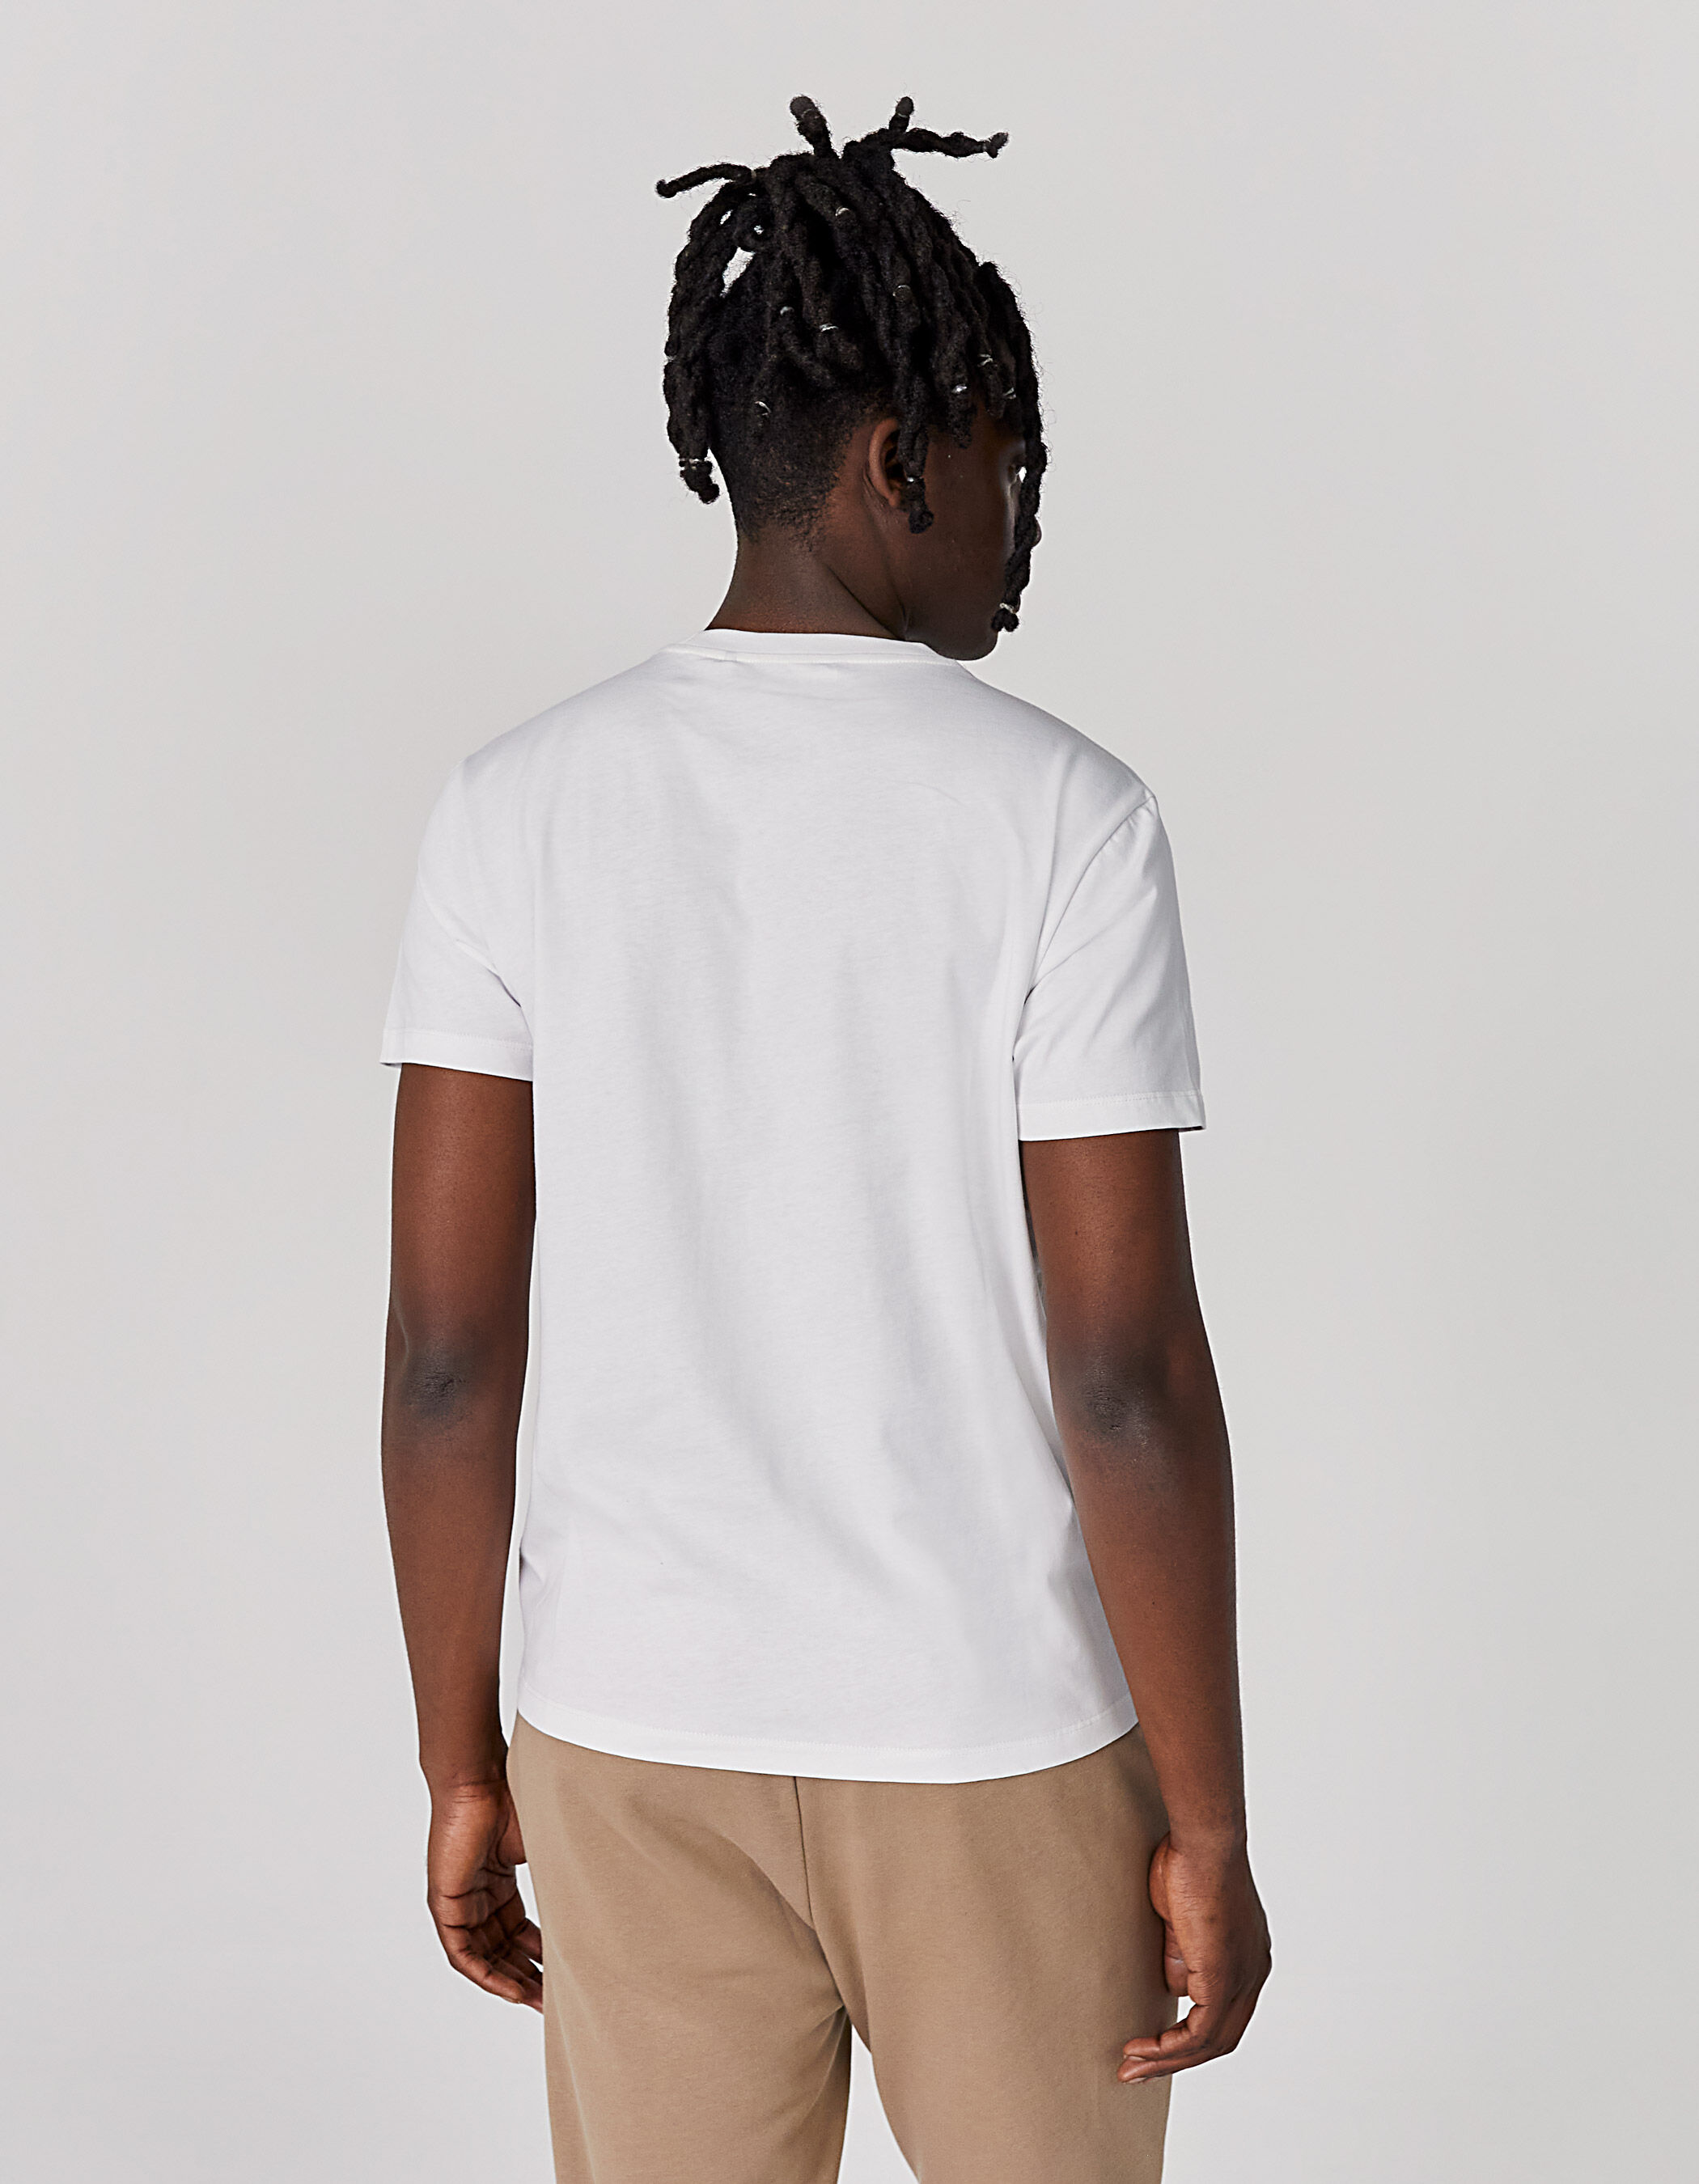 KINDER Hemden & T-Shirts Basisch Rabatt 88 % Zara Poloshirt Weiß 